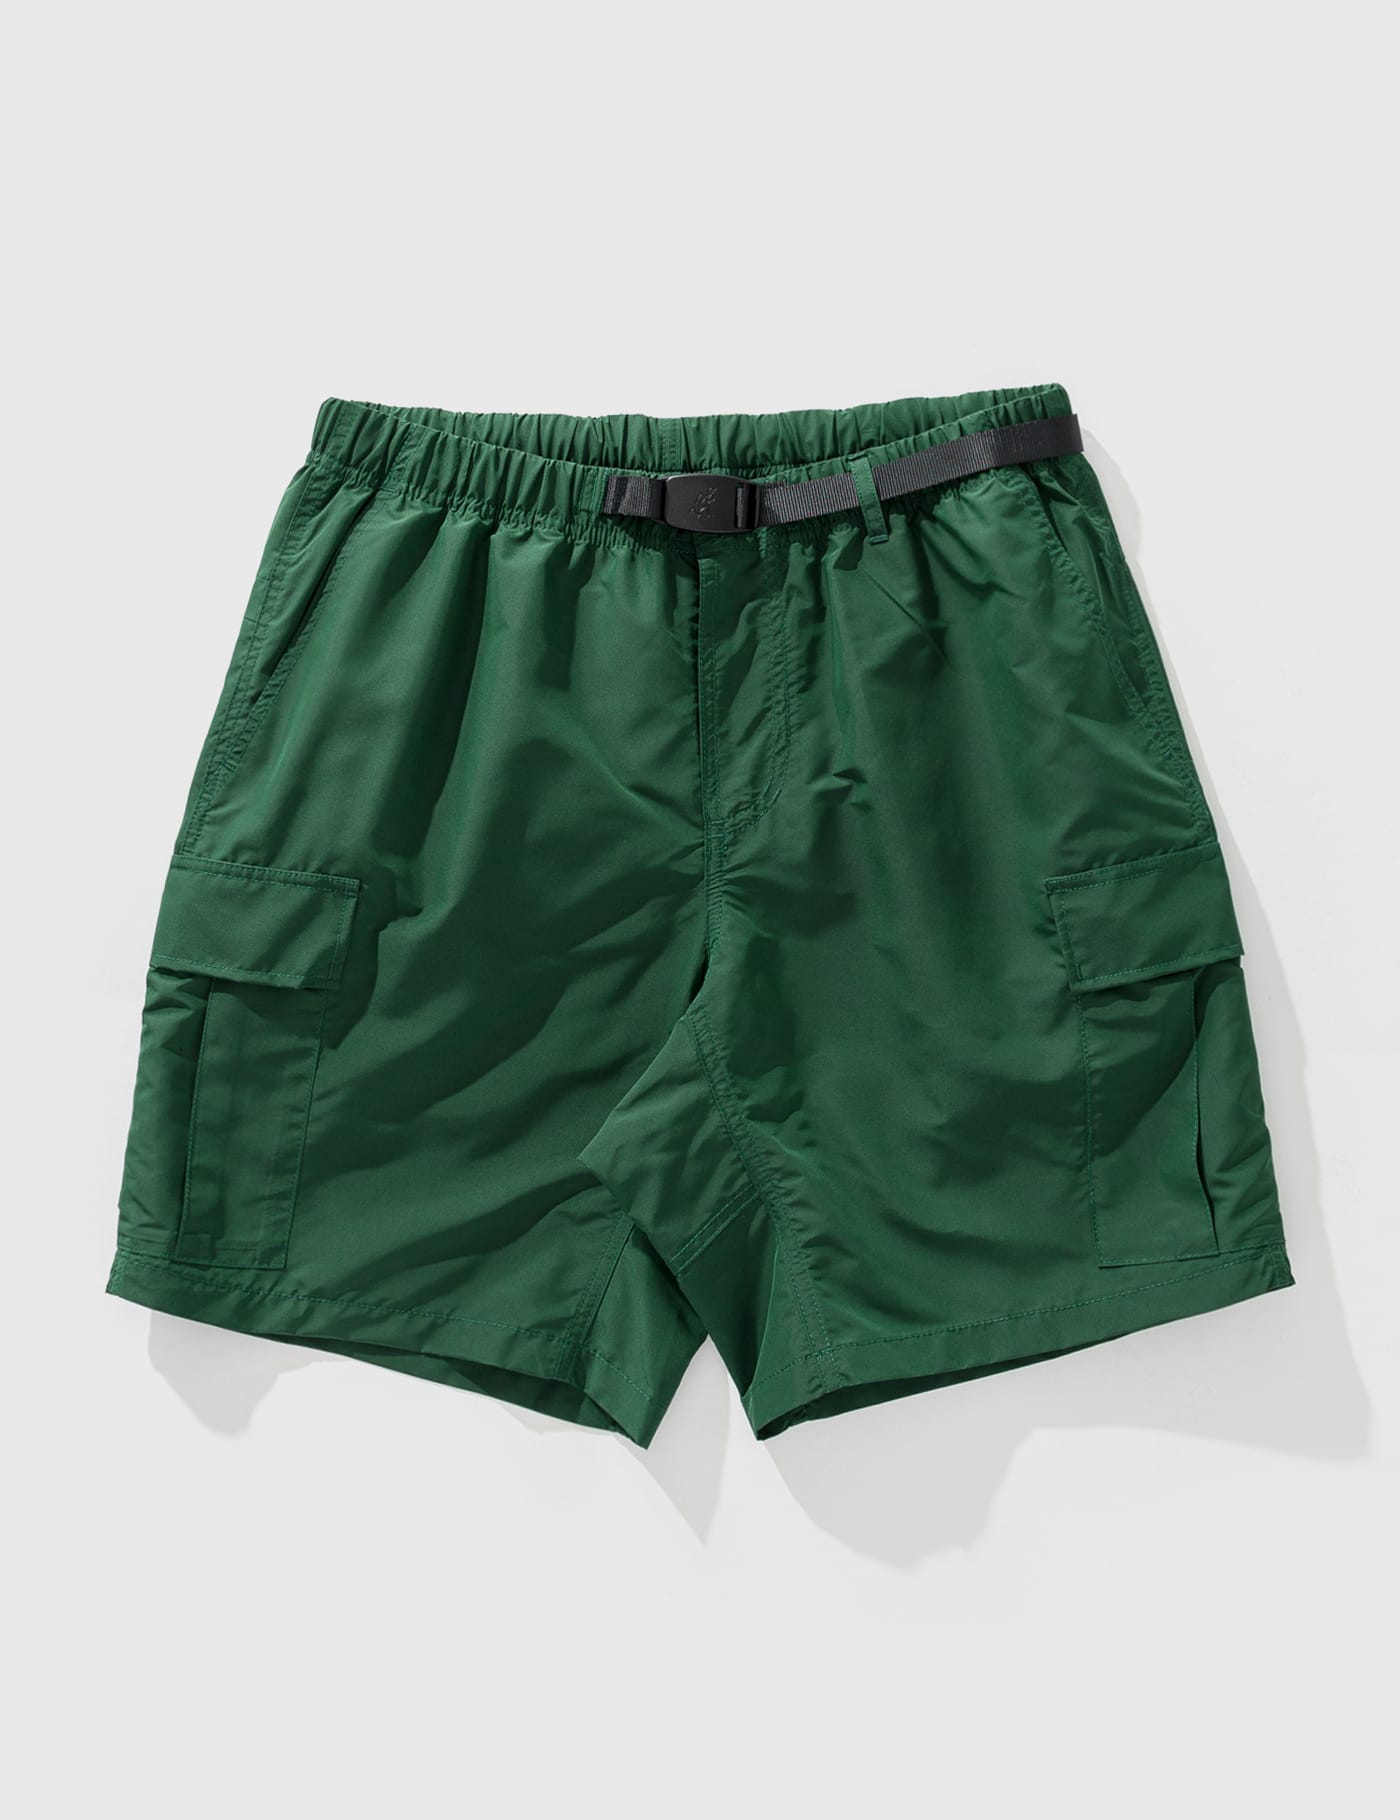 Shorts Cargo Shell Gramicci de hombre de color Neutro Hombre Ropa de Pantalones cortos de Bermudas cargo 